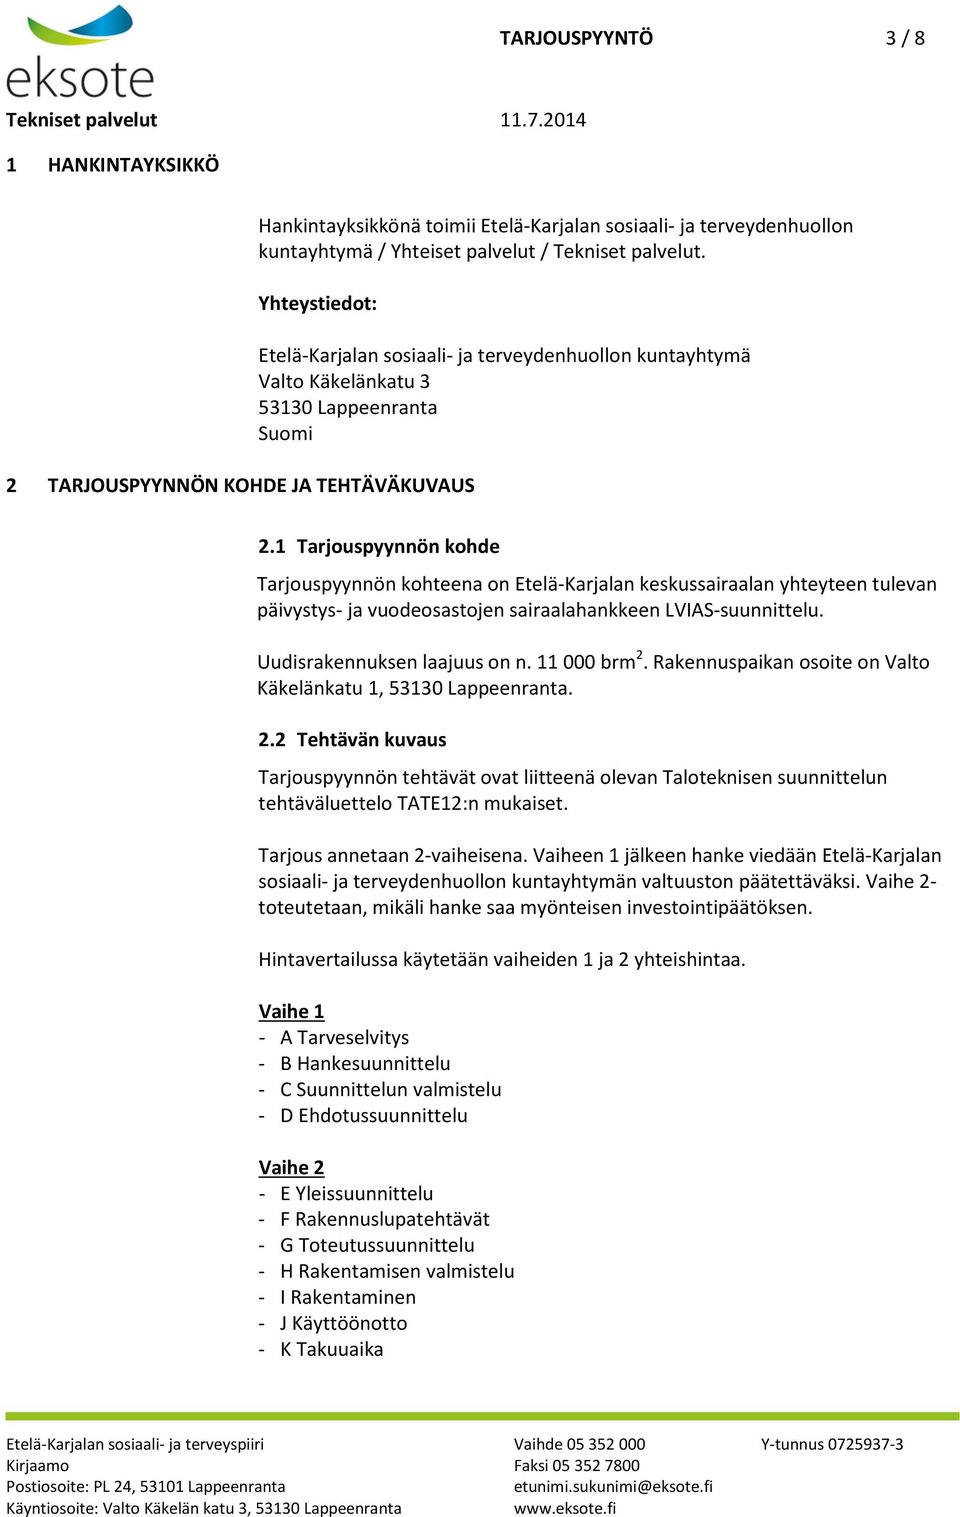 1 Tarjouspyynnön kohde Tarjouspyynnön kohteena on Etelä-Karjalan keskussairaalan yhteyteen tulevan päivystys- ja vuodeosastojen sairaalahankkeen LVIAS-suunnittelu. Uudisrakennuksen laajuus on n.